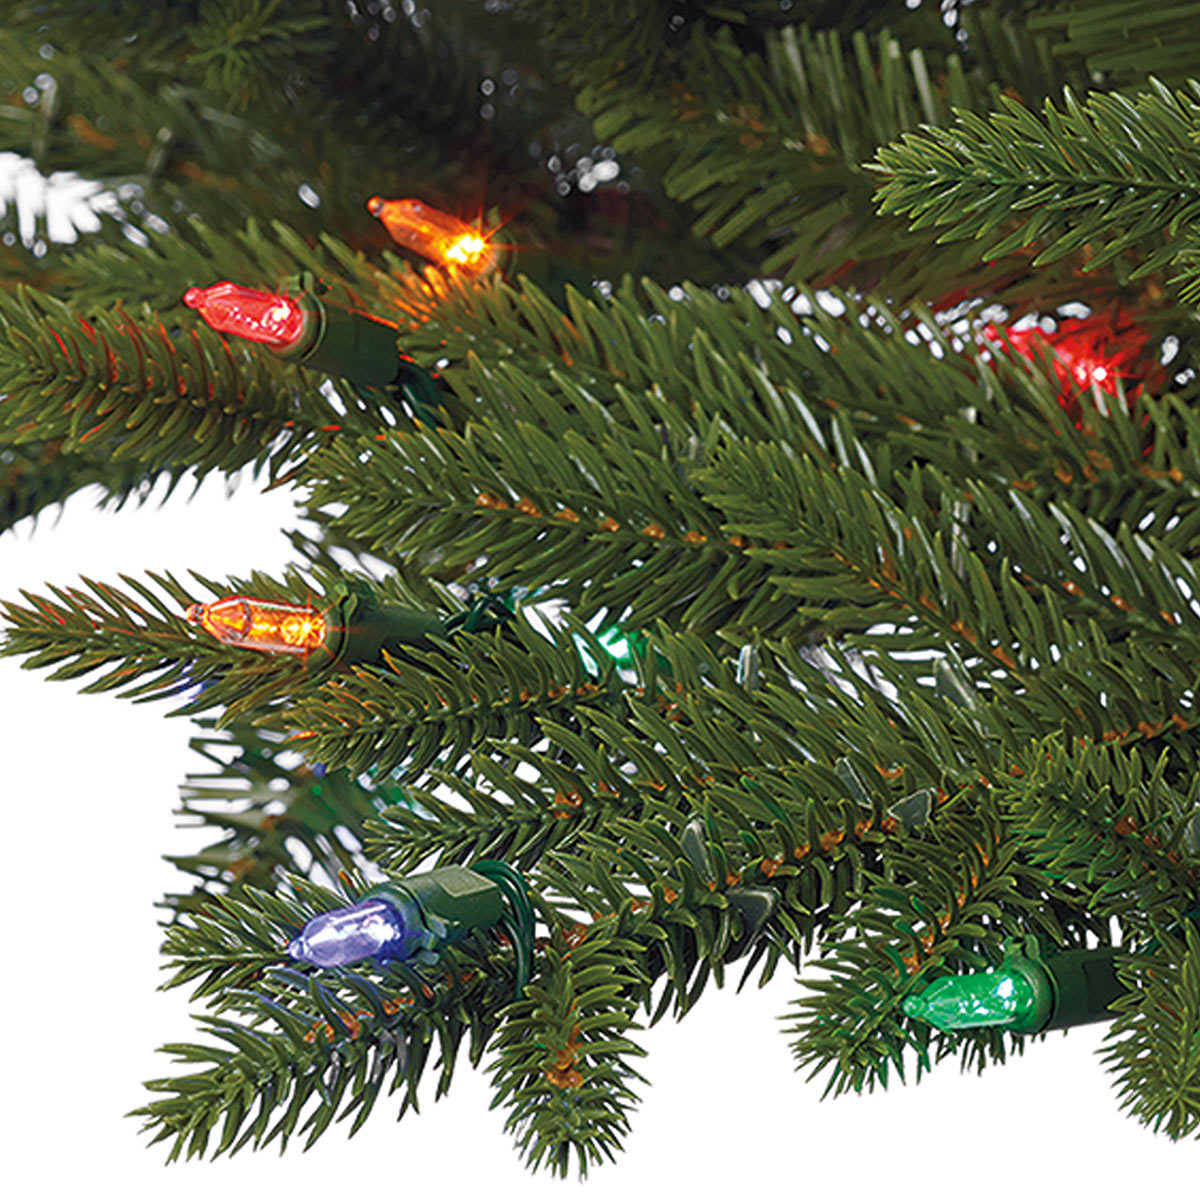 Aspen 9ft (2.7m) Pre-Lit 900 LED Dual Colour Artificial Christmas Tree